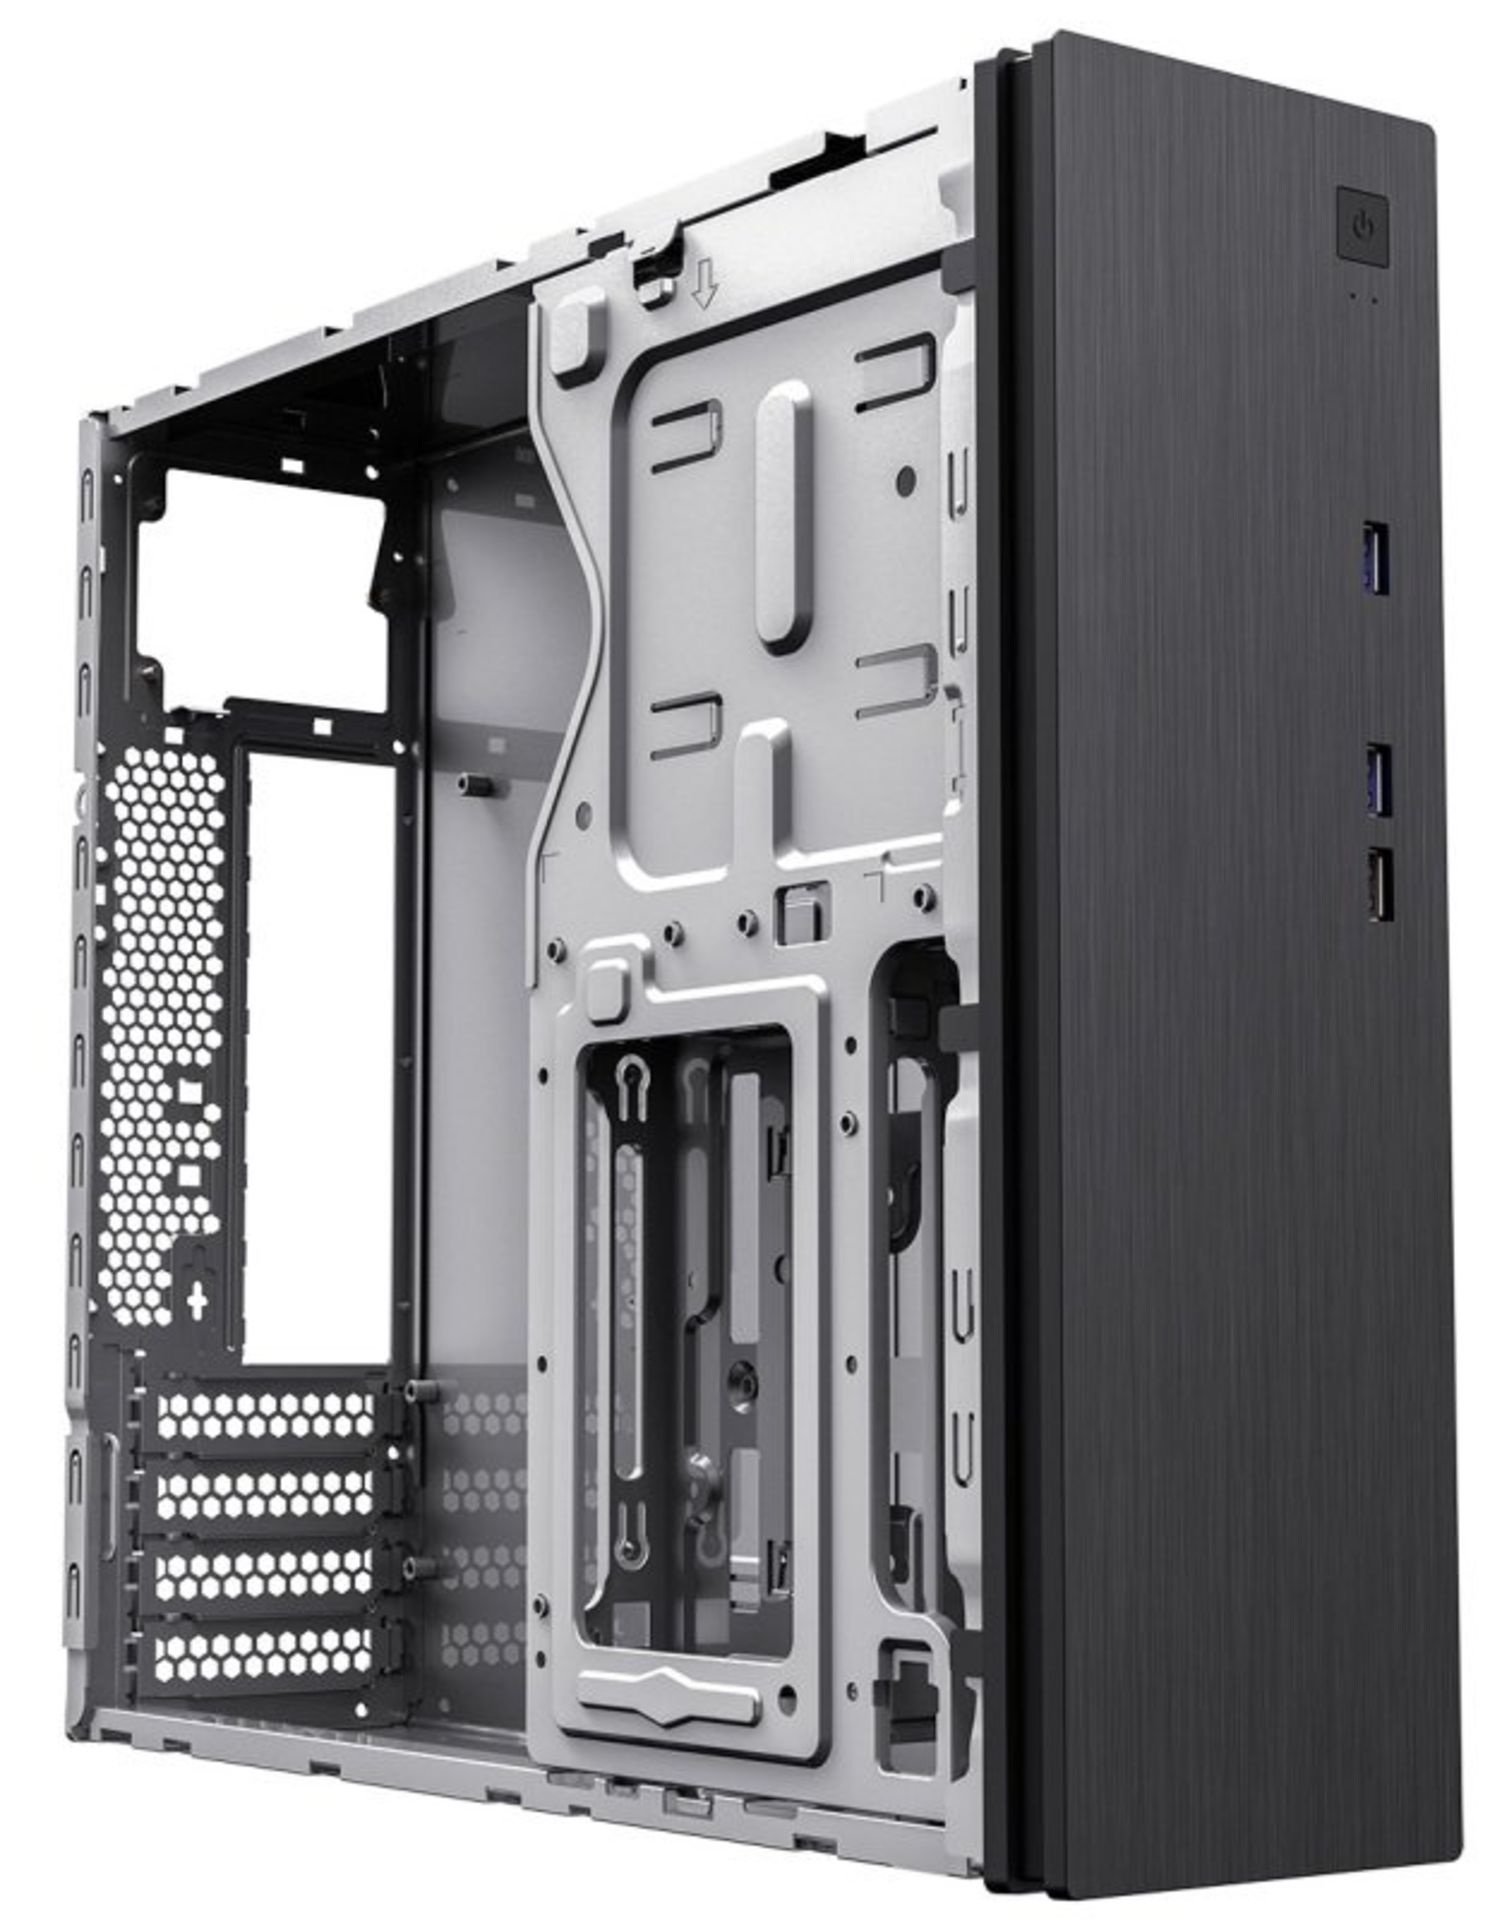 3x NEW & BOXED CIT S506 Micro ATX Desktop Case - BLACK. RRP £44.99 EACH. (PCK). The CiT S506 slim - Image 8 of 10